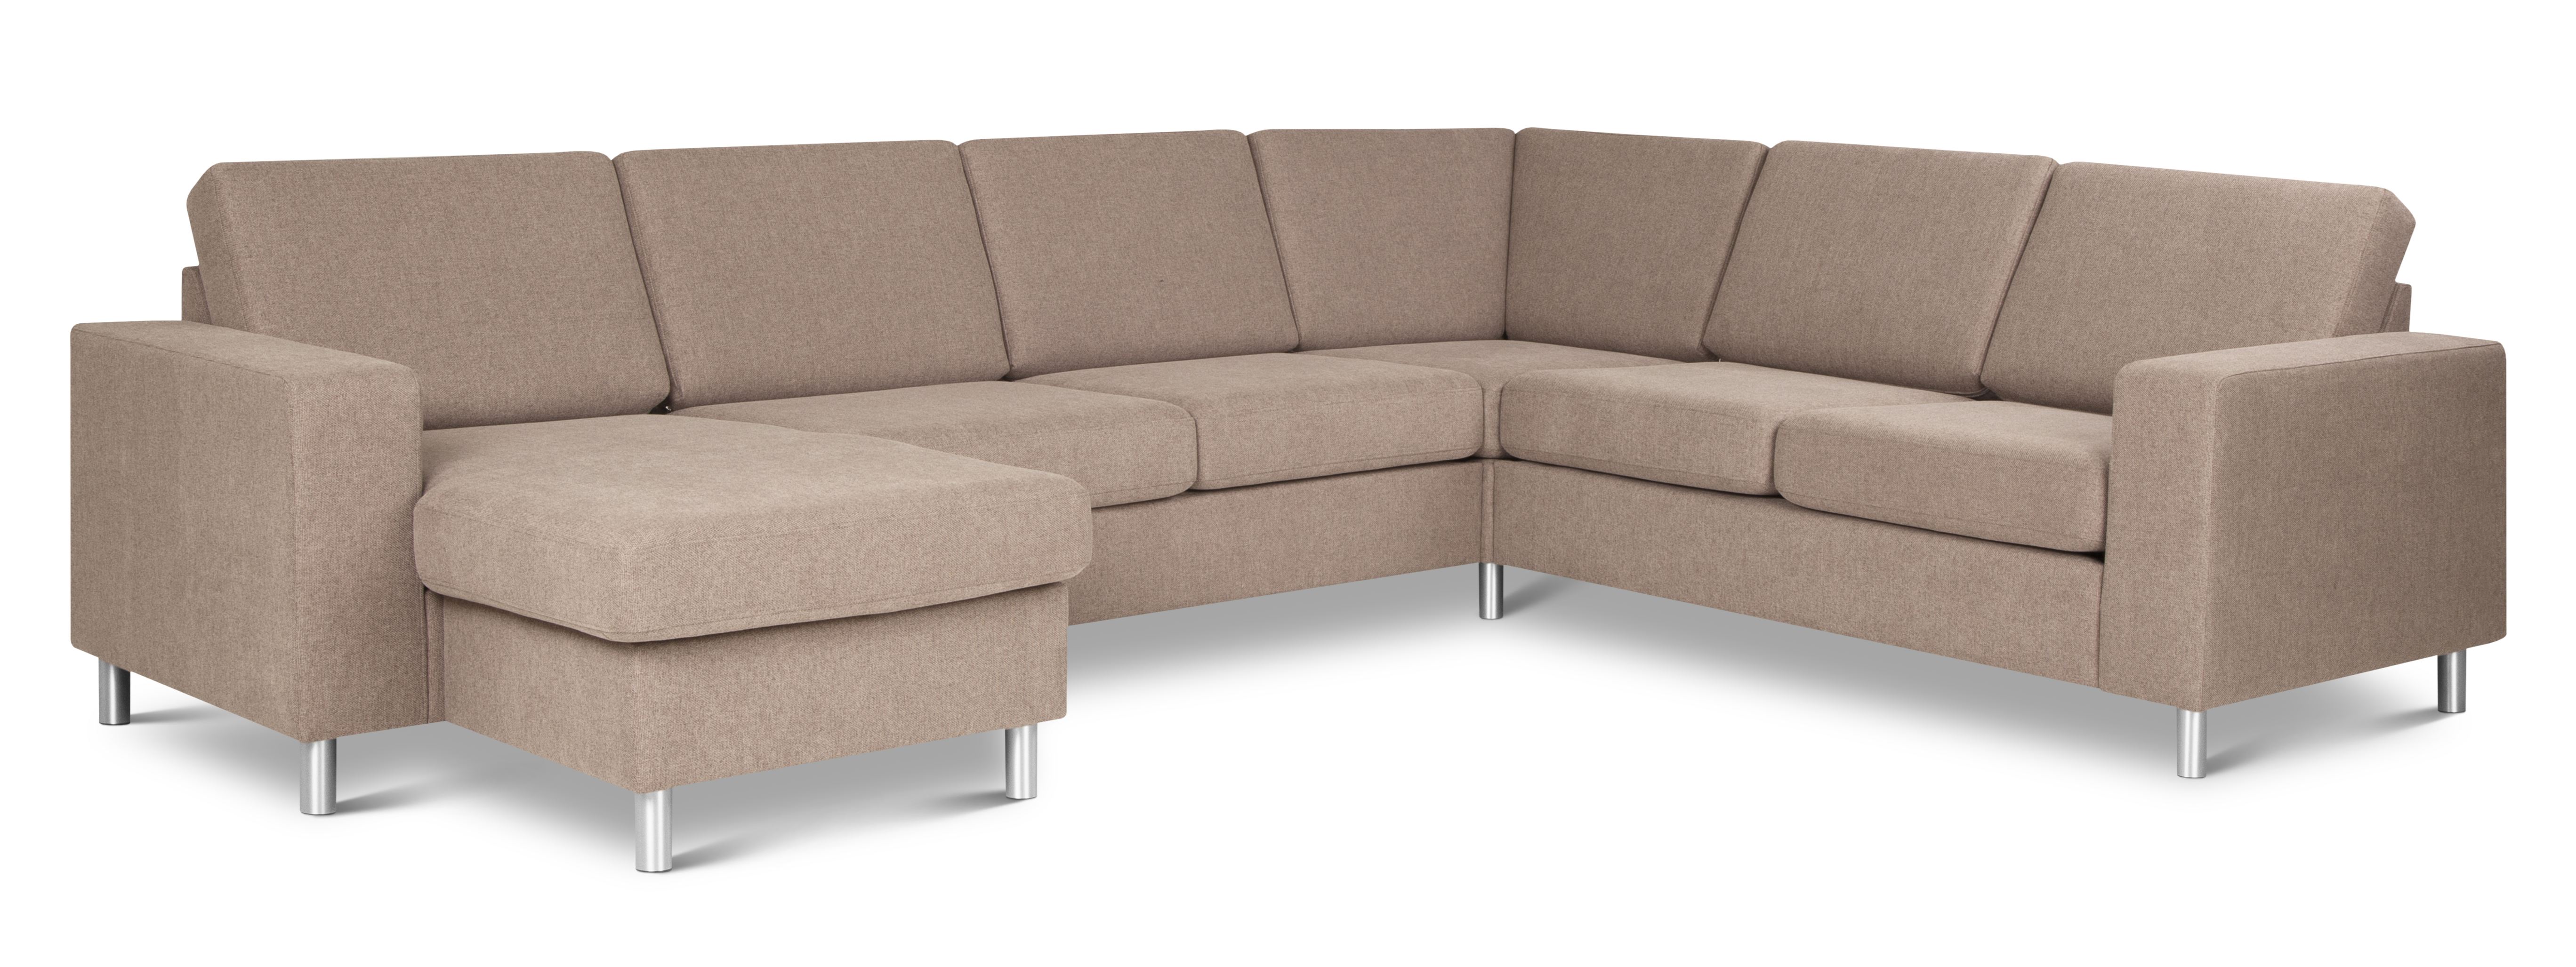 Pan set 6 U 2C3D sofa med chaiselong - antelope beige polyester stof og børstet aluminium